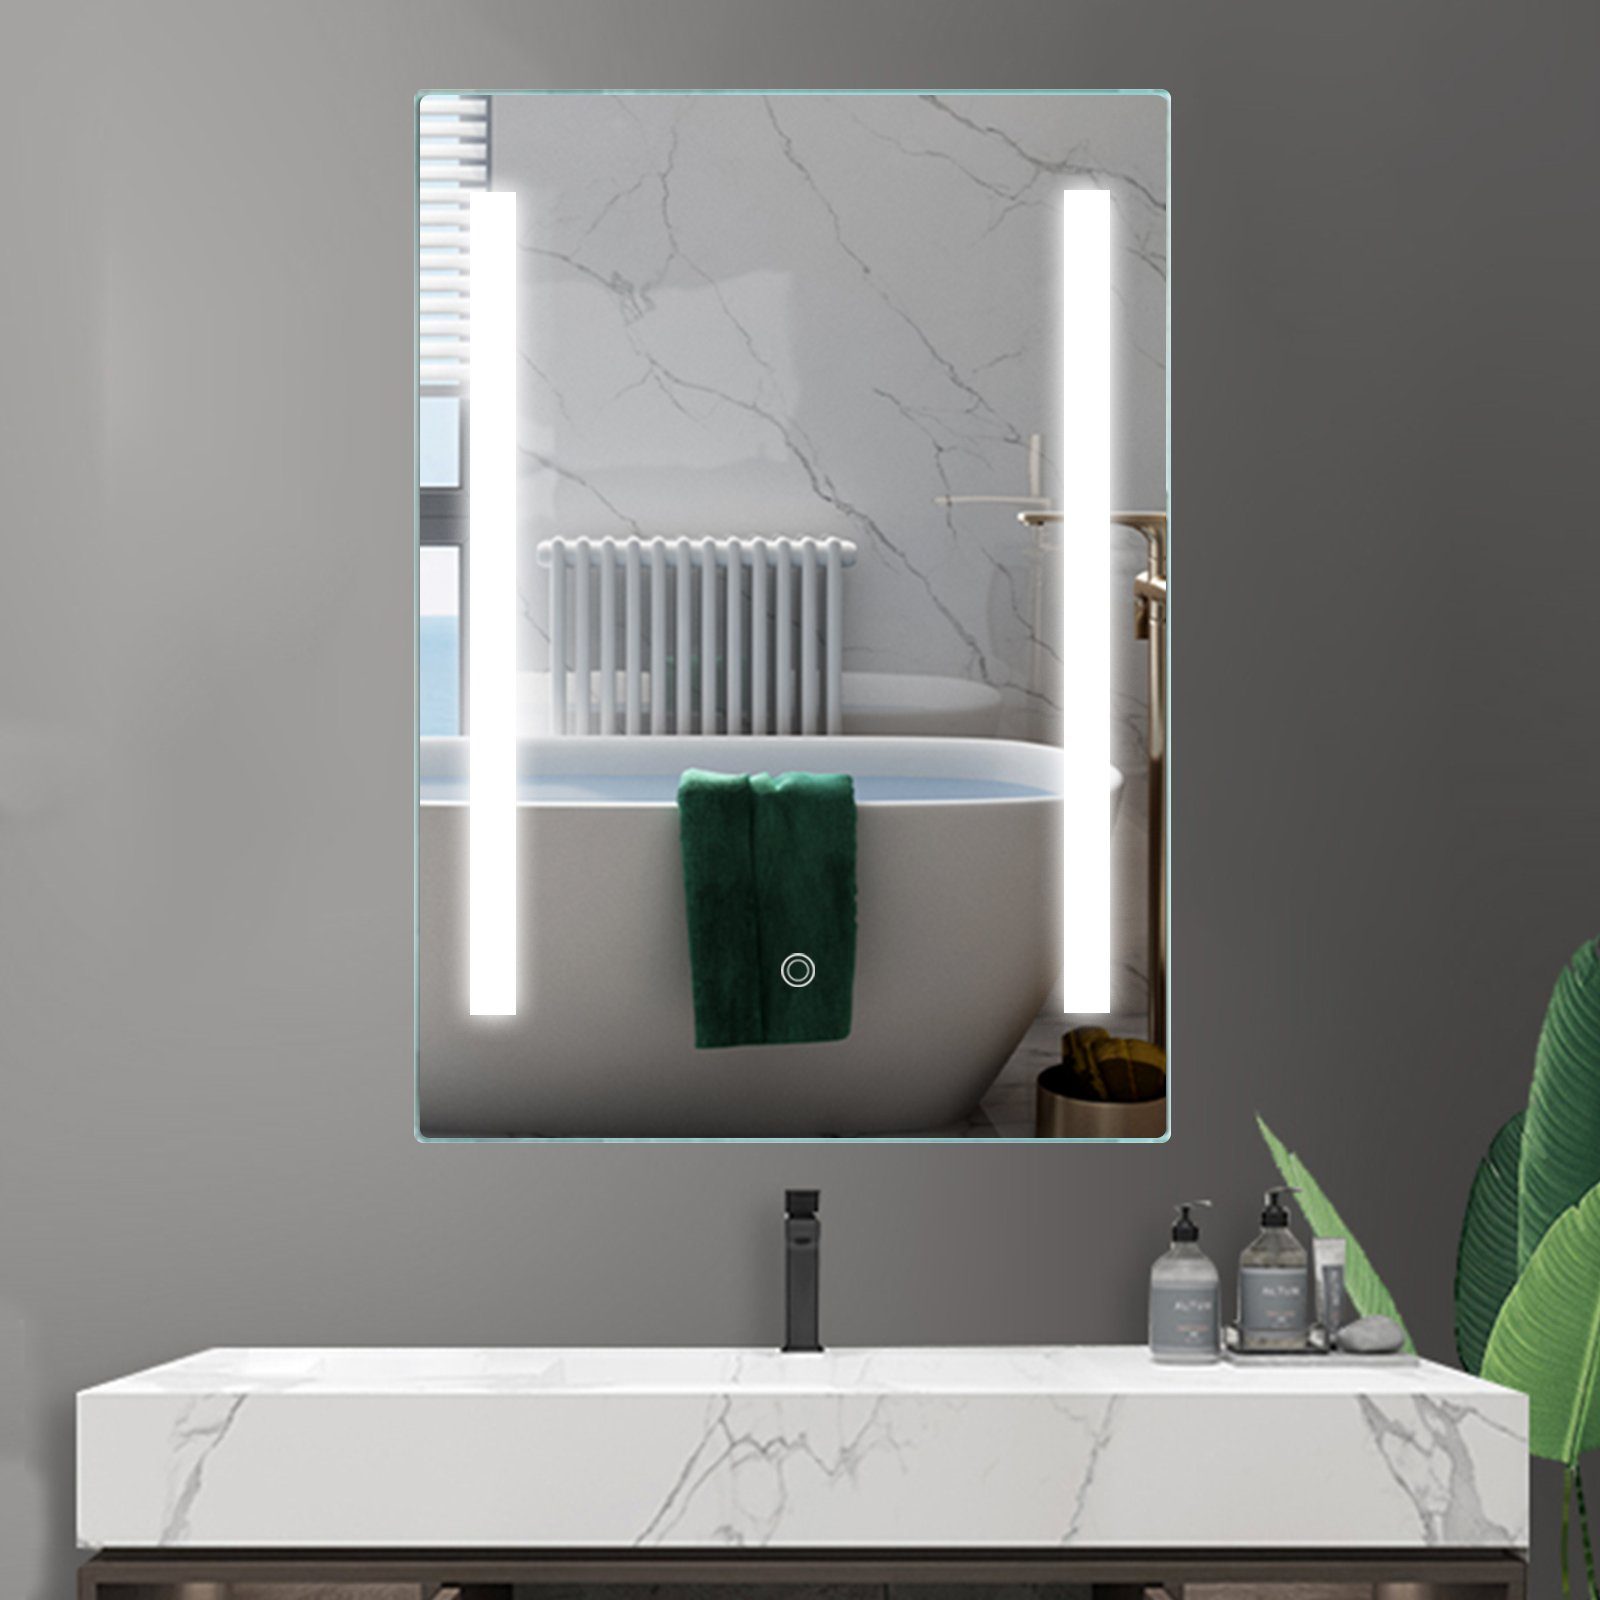 Lichtspiegel Badezimmerspiegel Wandspiegel IMPTS LED Bad Spiegel 50x70cm Badspiegel mit Beleuchtung Touchschalter Antibeschlag Dimmbar neutralweiss IP44